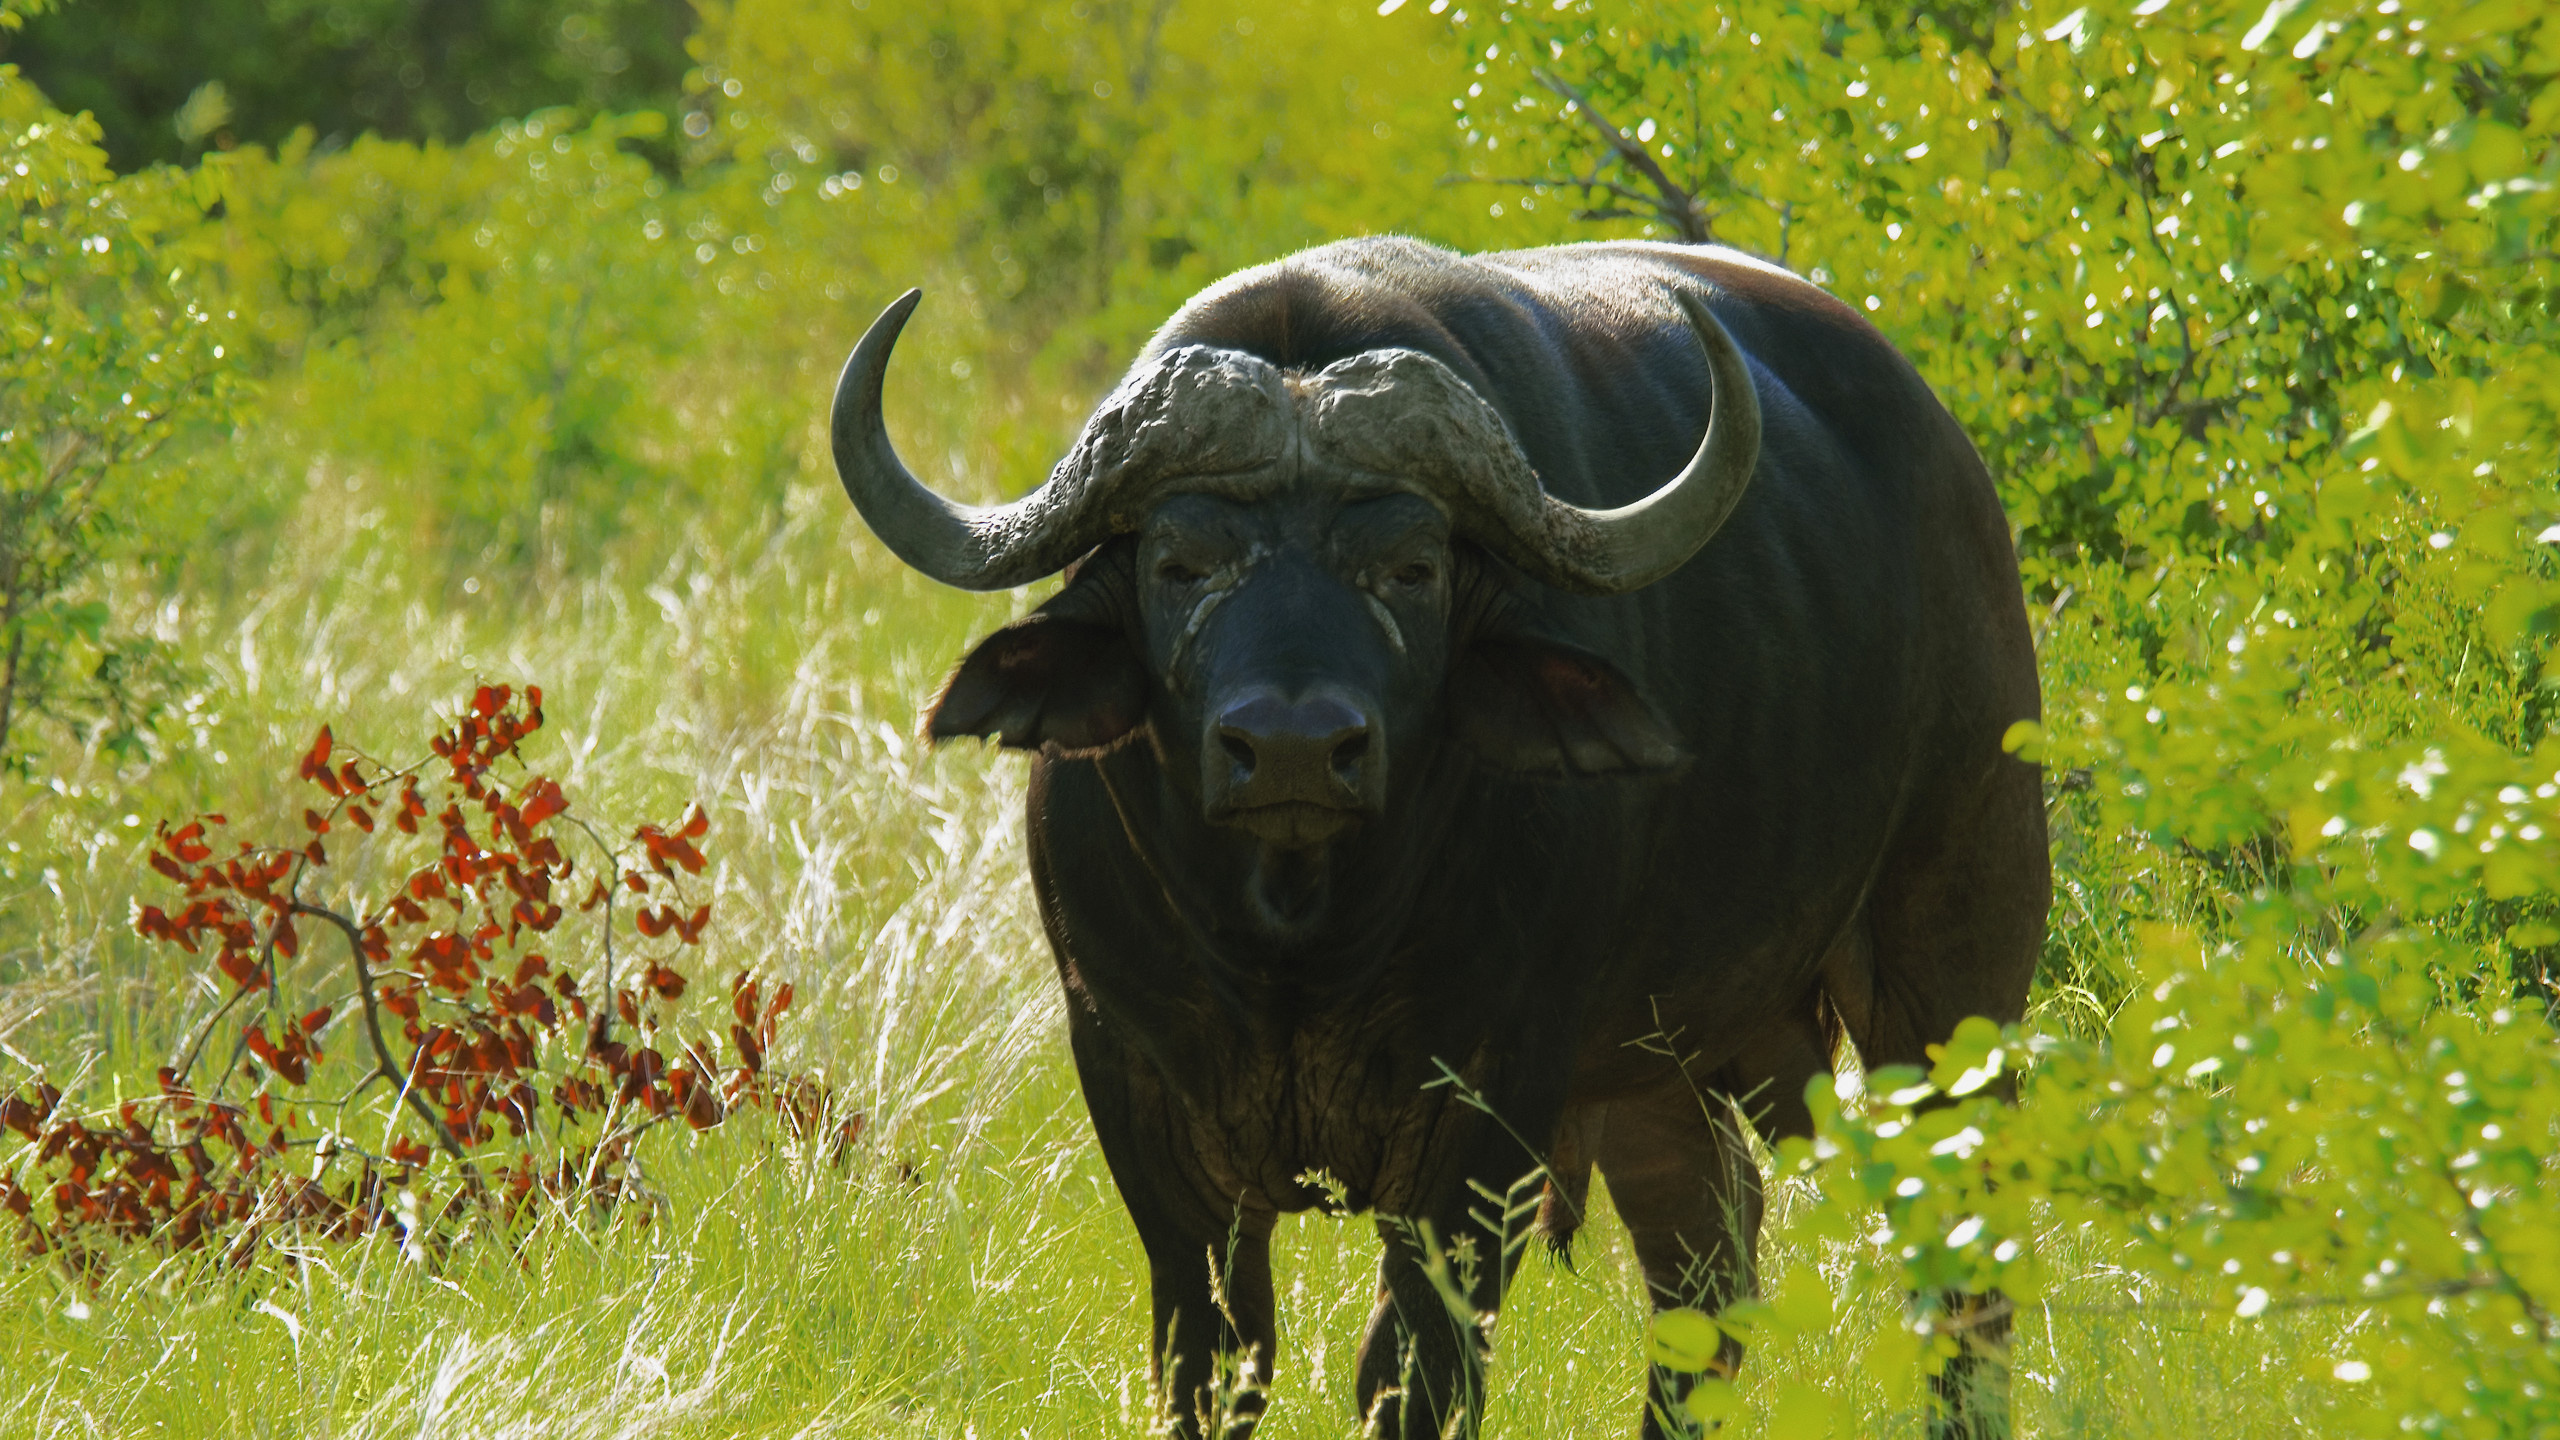 非洲水牛, 野生动物, 水牛, 陆地动物, 喇叭 壁纸 2560x1440 允许